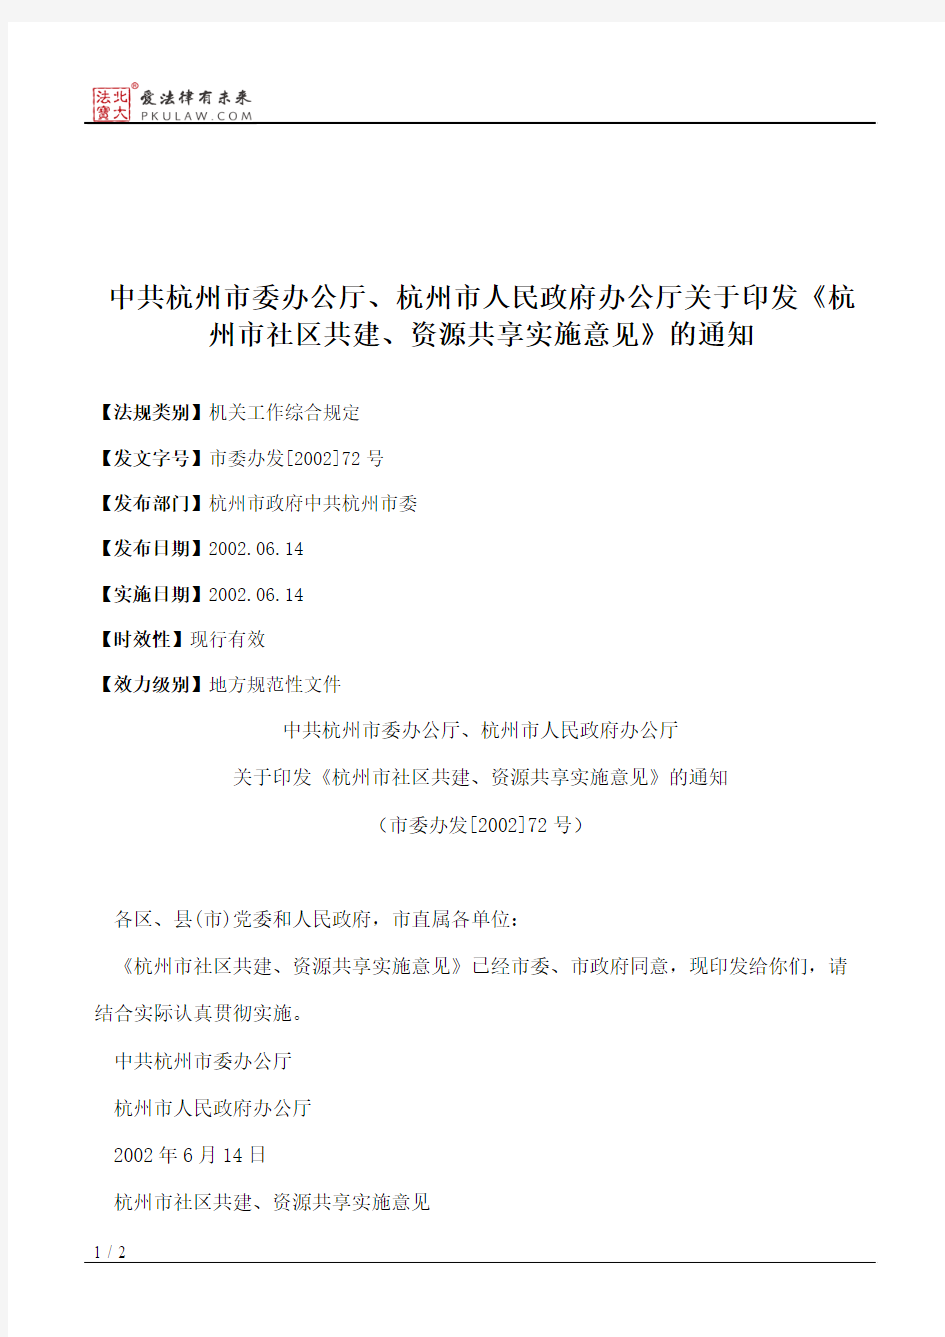 中共杭州市委办公厅、杭州市人民政府办公厅关于印发《杭州市社区